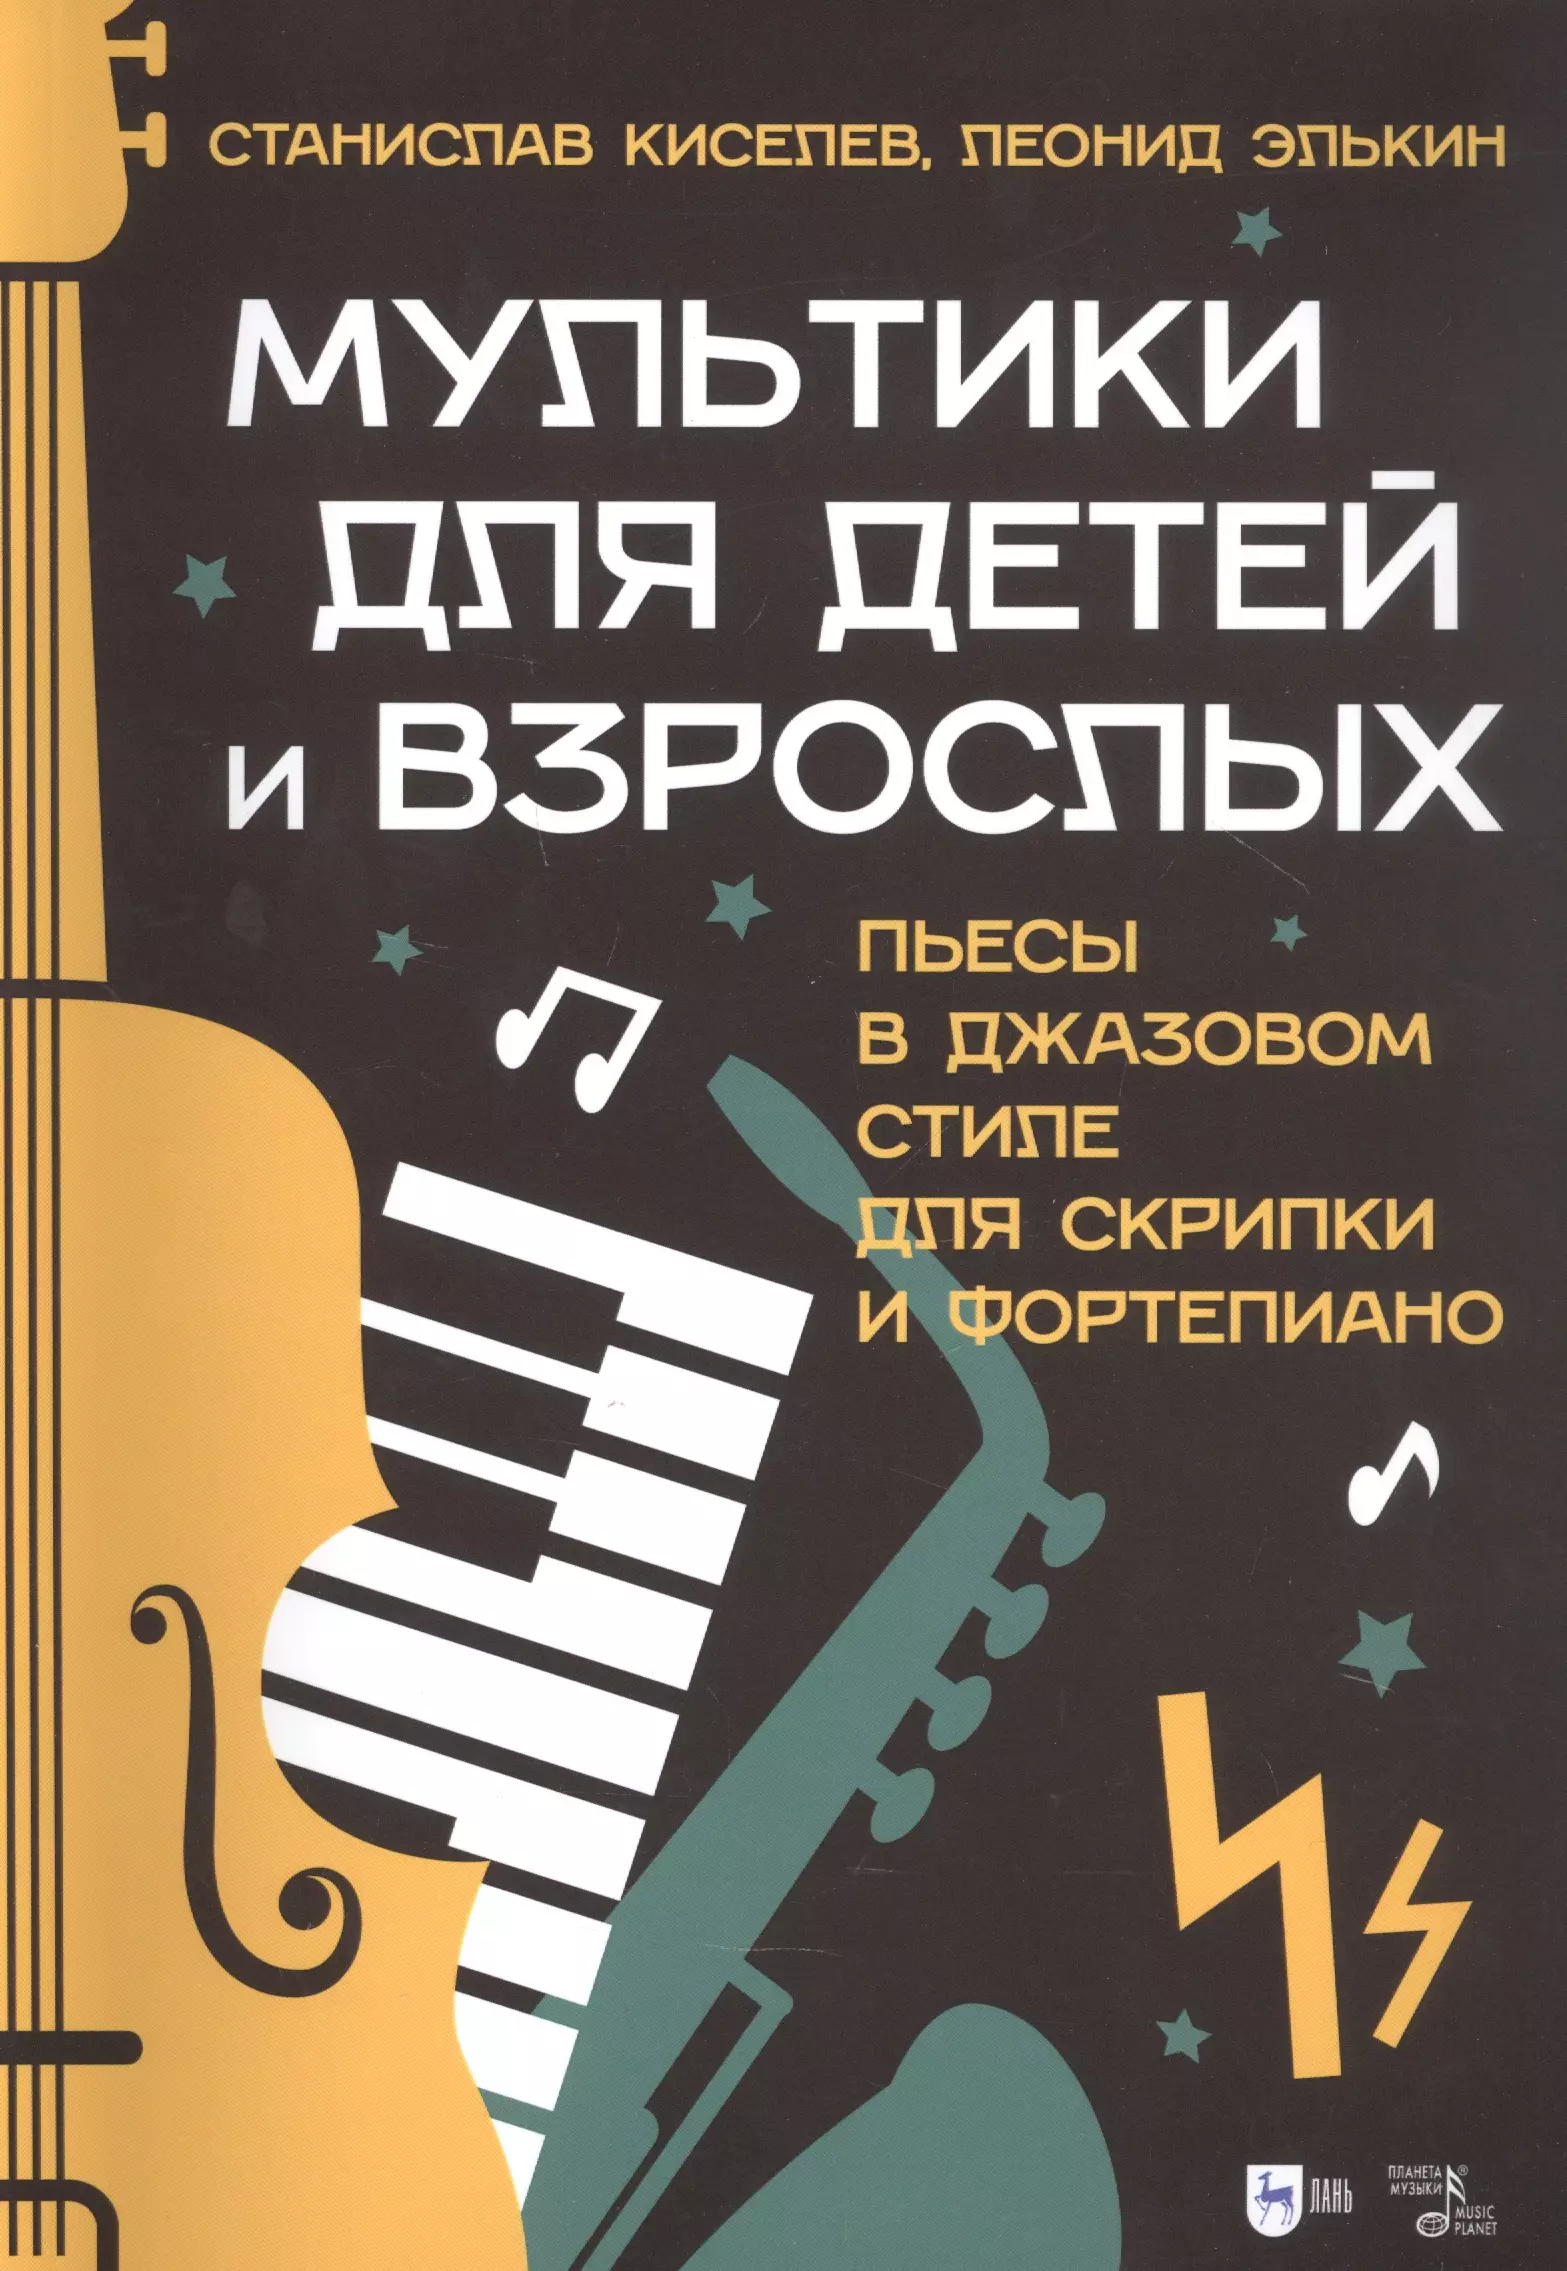 Киселев С. С. - Мультики для детей и взрослых. Пьесы в джазовом стиле для скрипки и фортепиано. Ноты